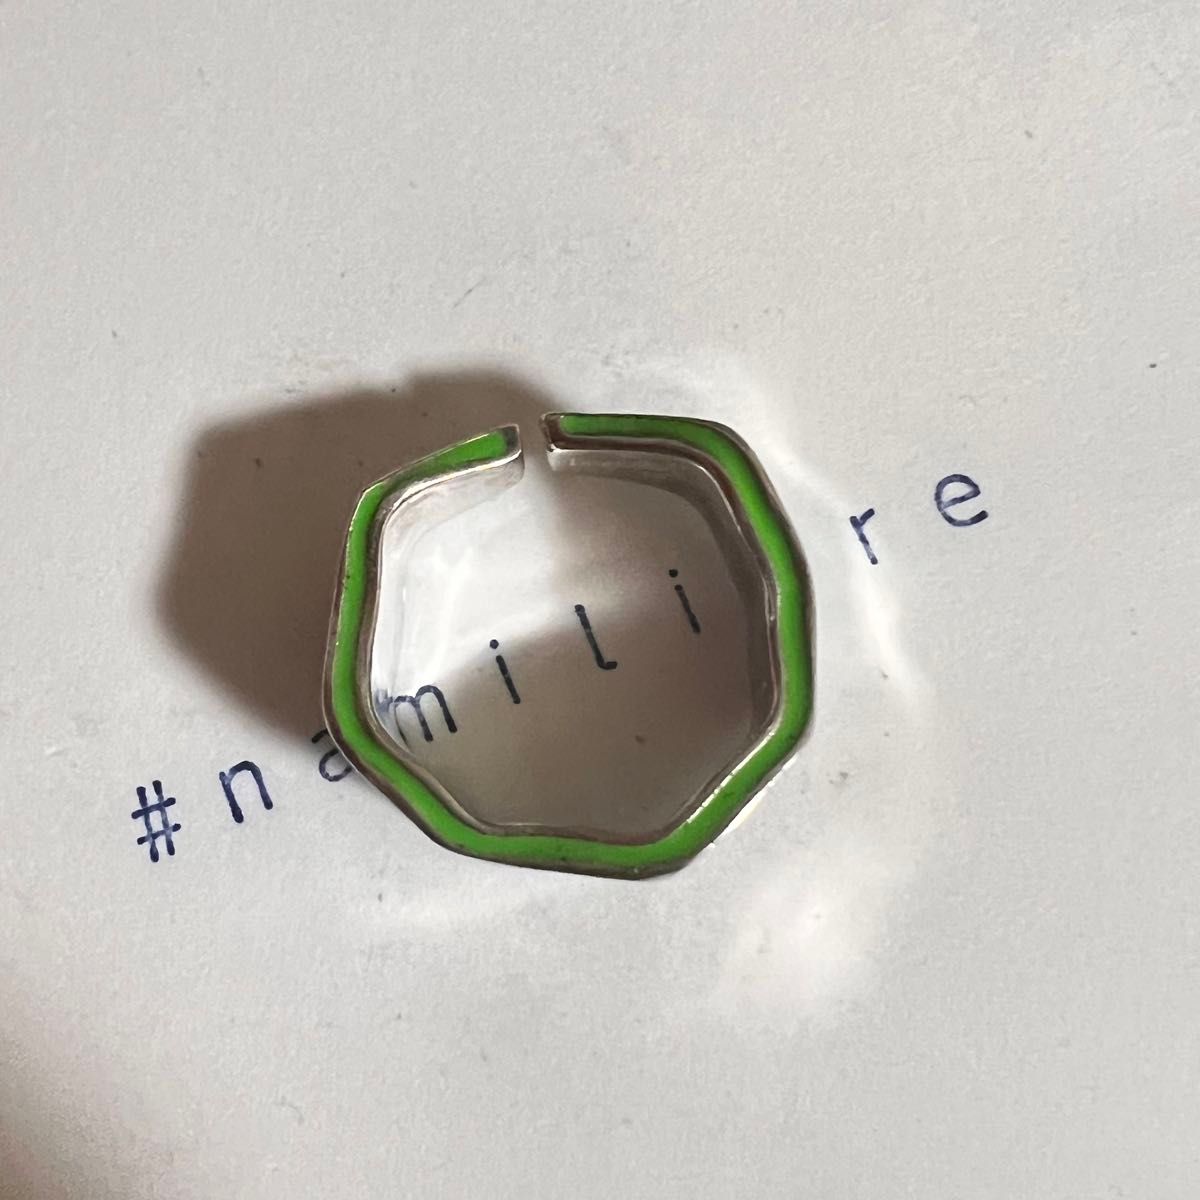 シルバーリング 925 ワイドボリューム 凸凹 文字 バイカラー 韓国 指輪